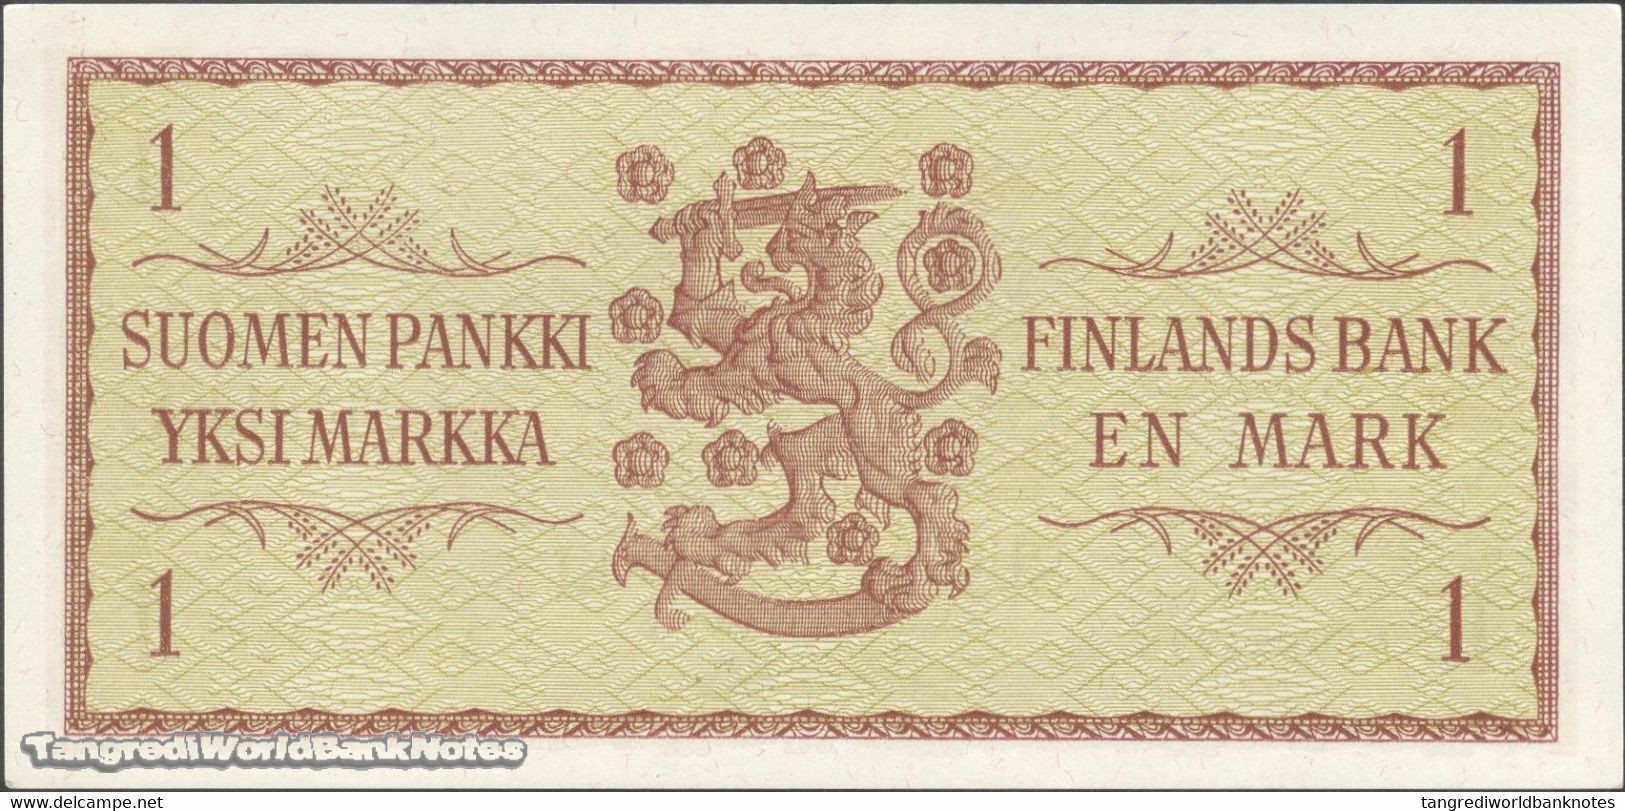 TWN - FINLAND 98a38 - 1 Markkaa 1963 Prefix AI - Signatures: Valvanne & Luukka UNC - Finlandia